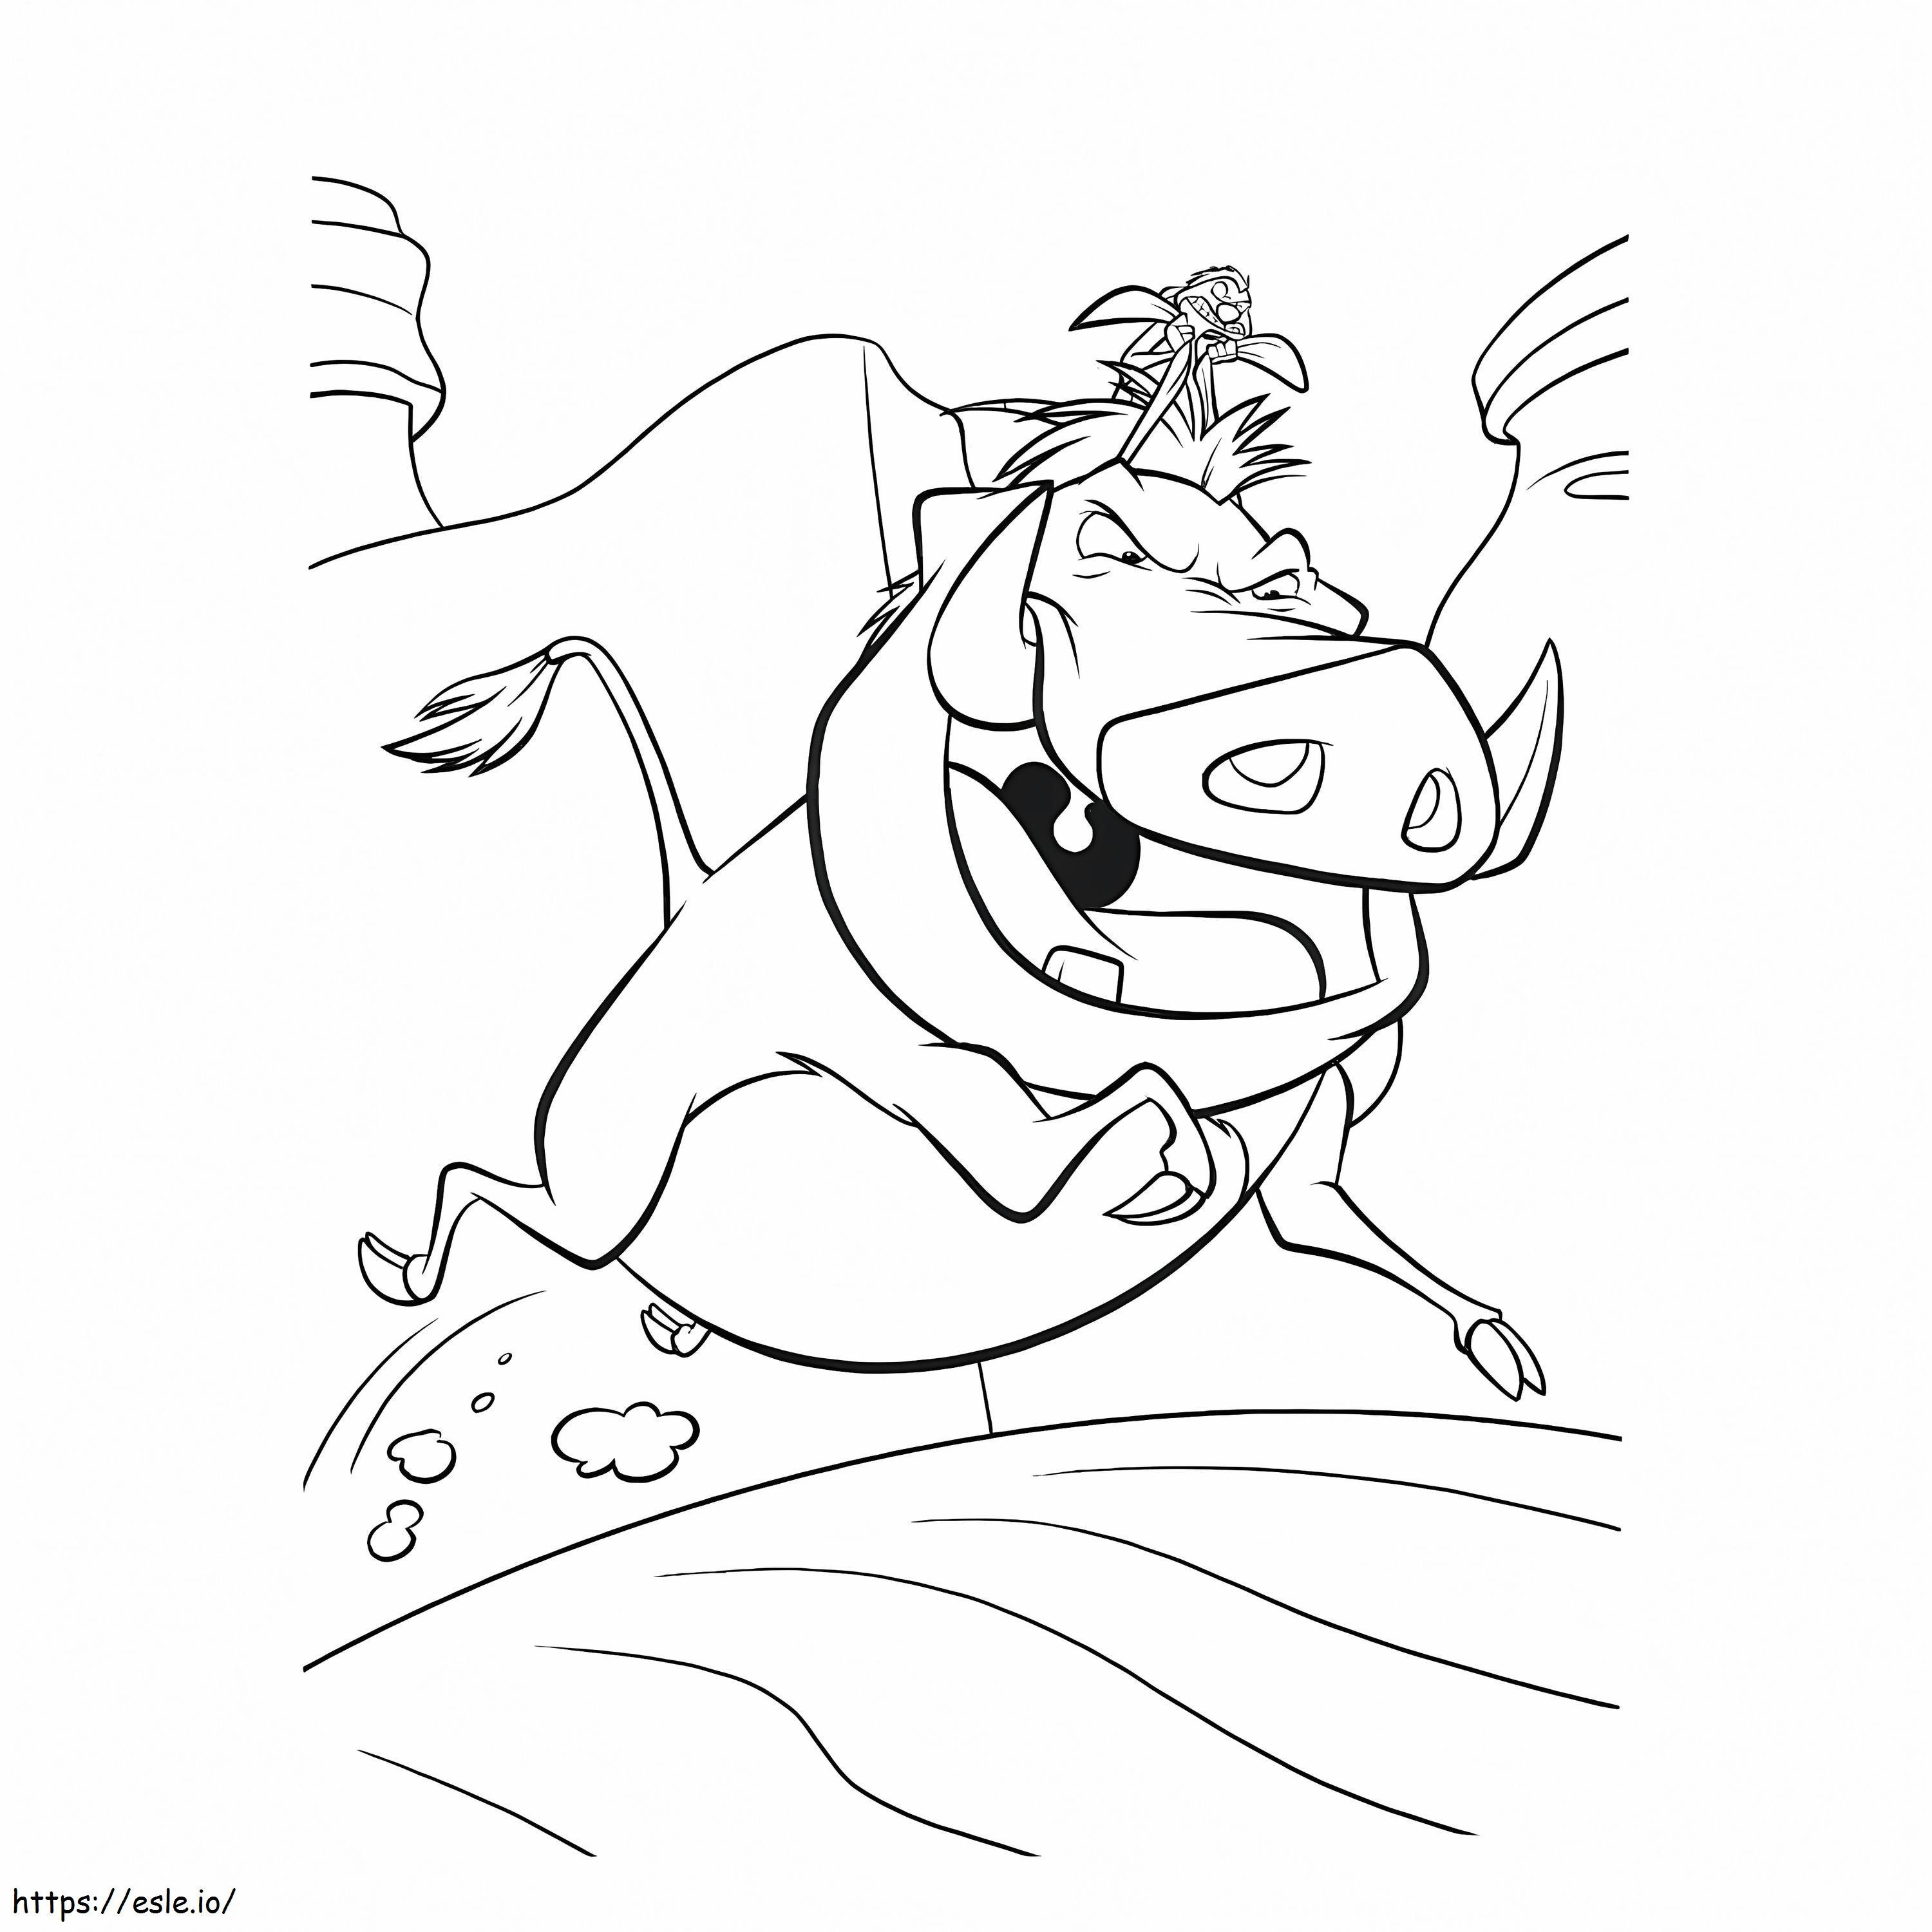 Timon ve Pumbaa Koşuyor boyama